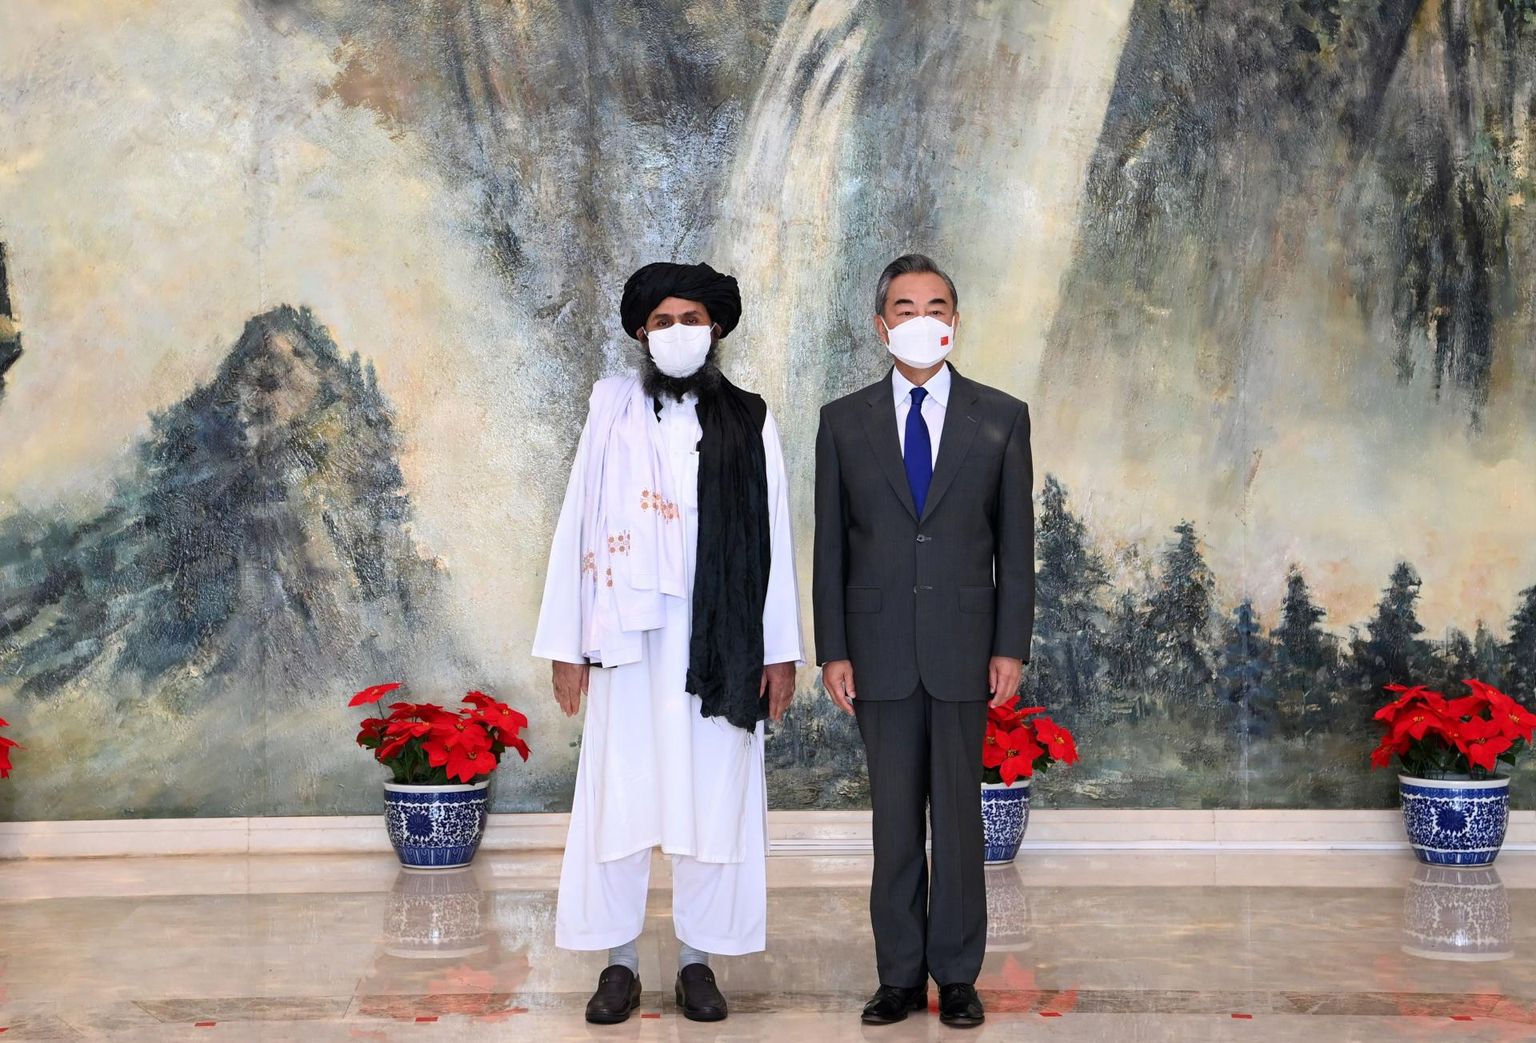 Hiina välisminister Wang Yi kohtub Mullah Abdul Ghani Baradariga, Talibani poliitilise tiiva juhiga Tianjinis, Hiinas 28. juulil 2021.